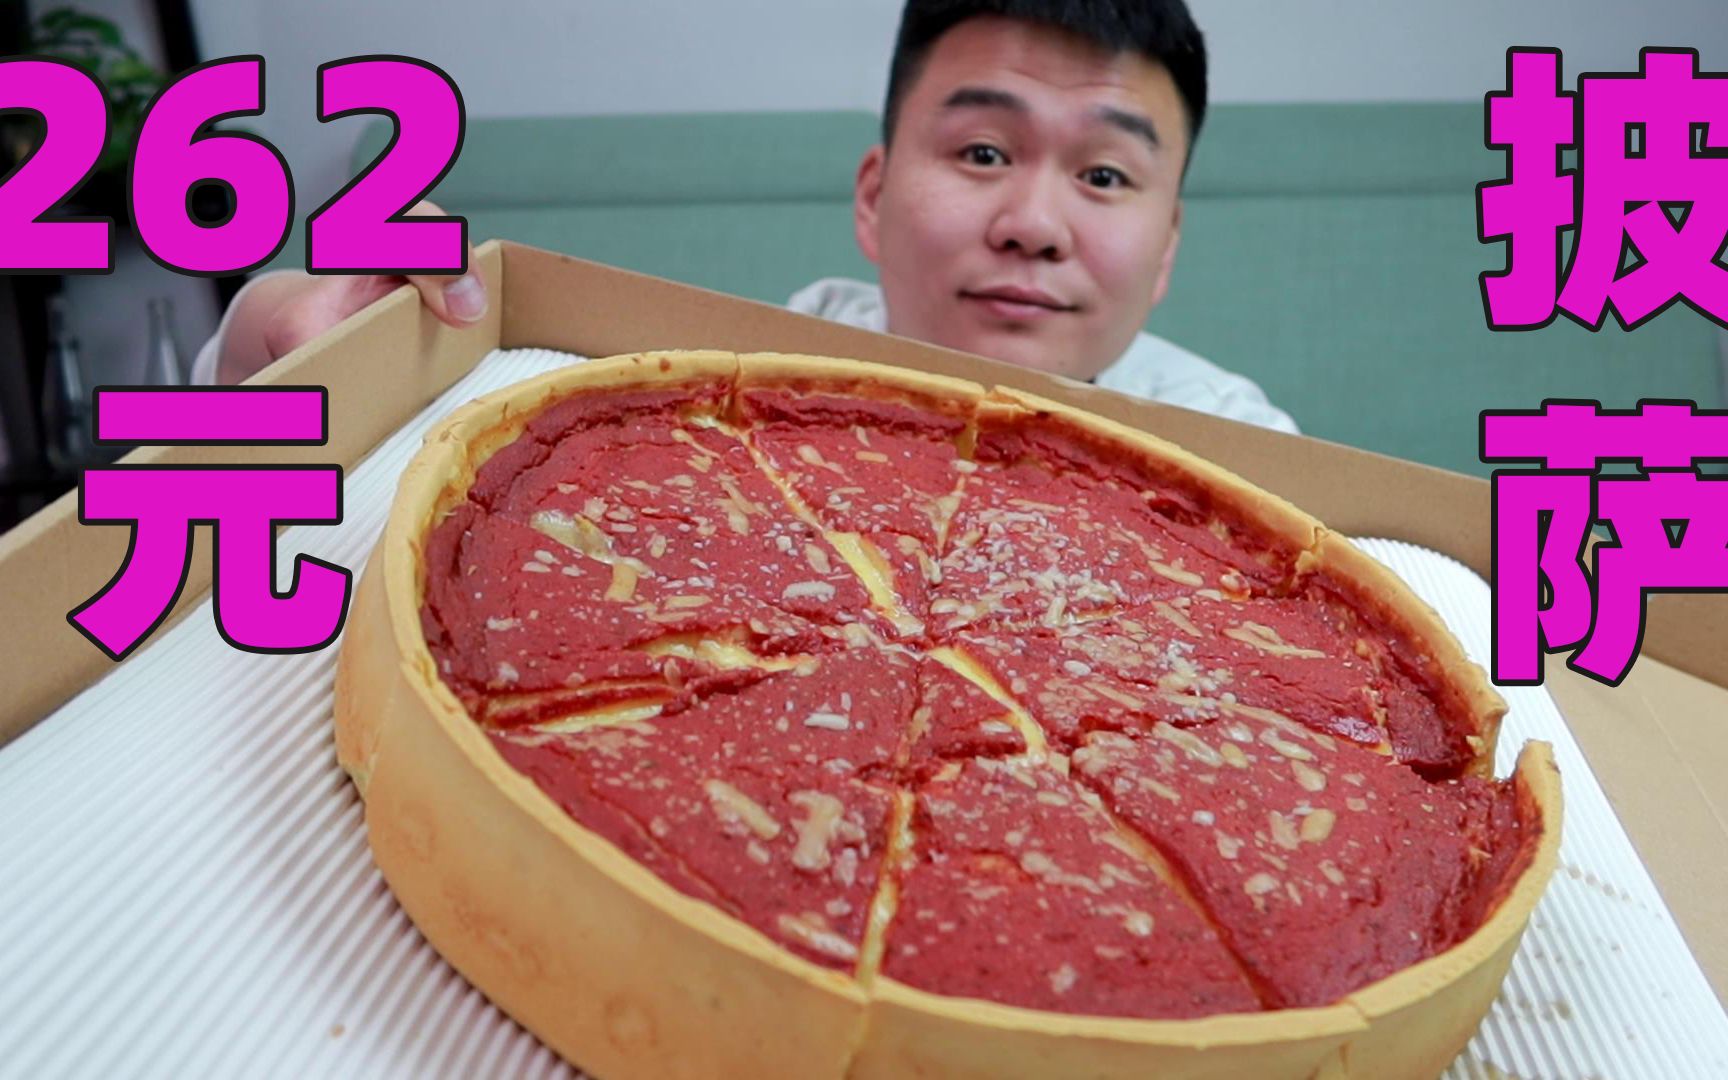 试吃比普通披萨厚3倍的披萨，价值262元，这也太值了吧？